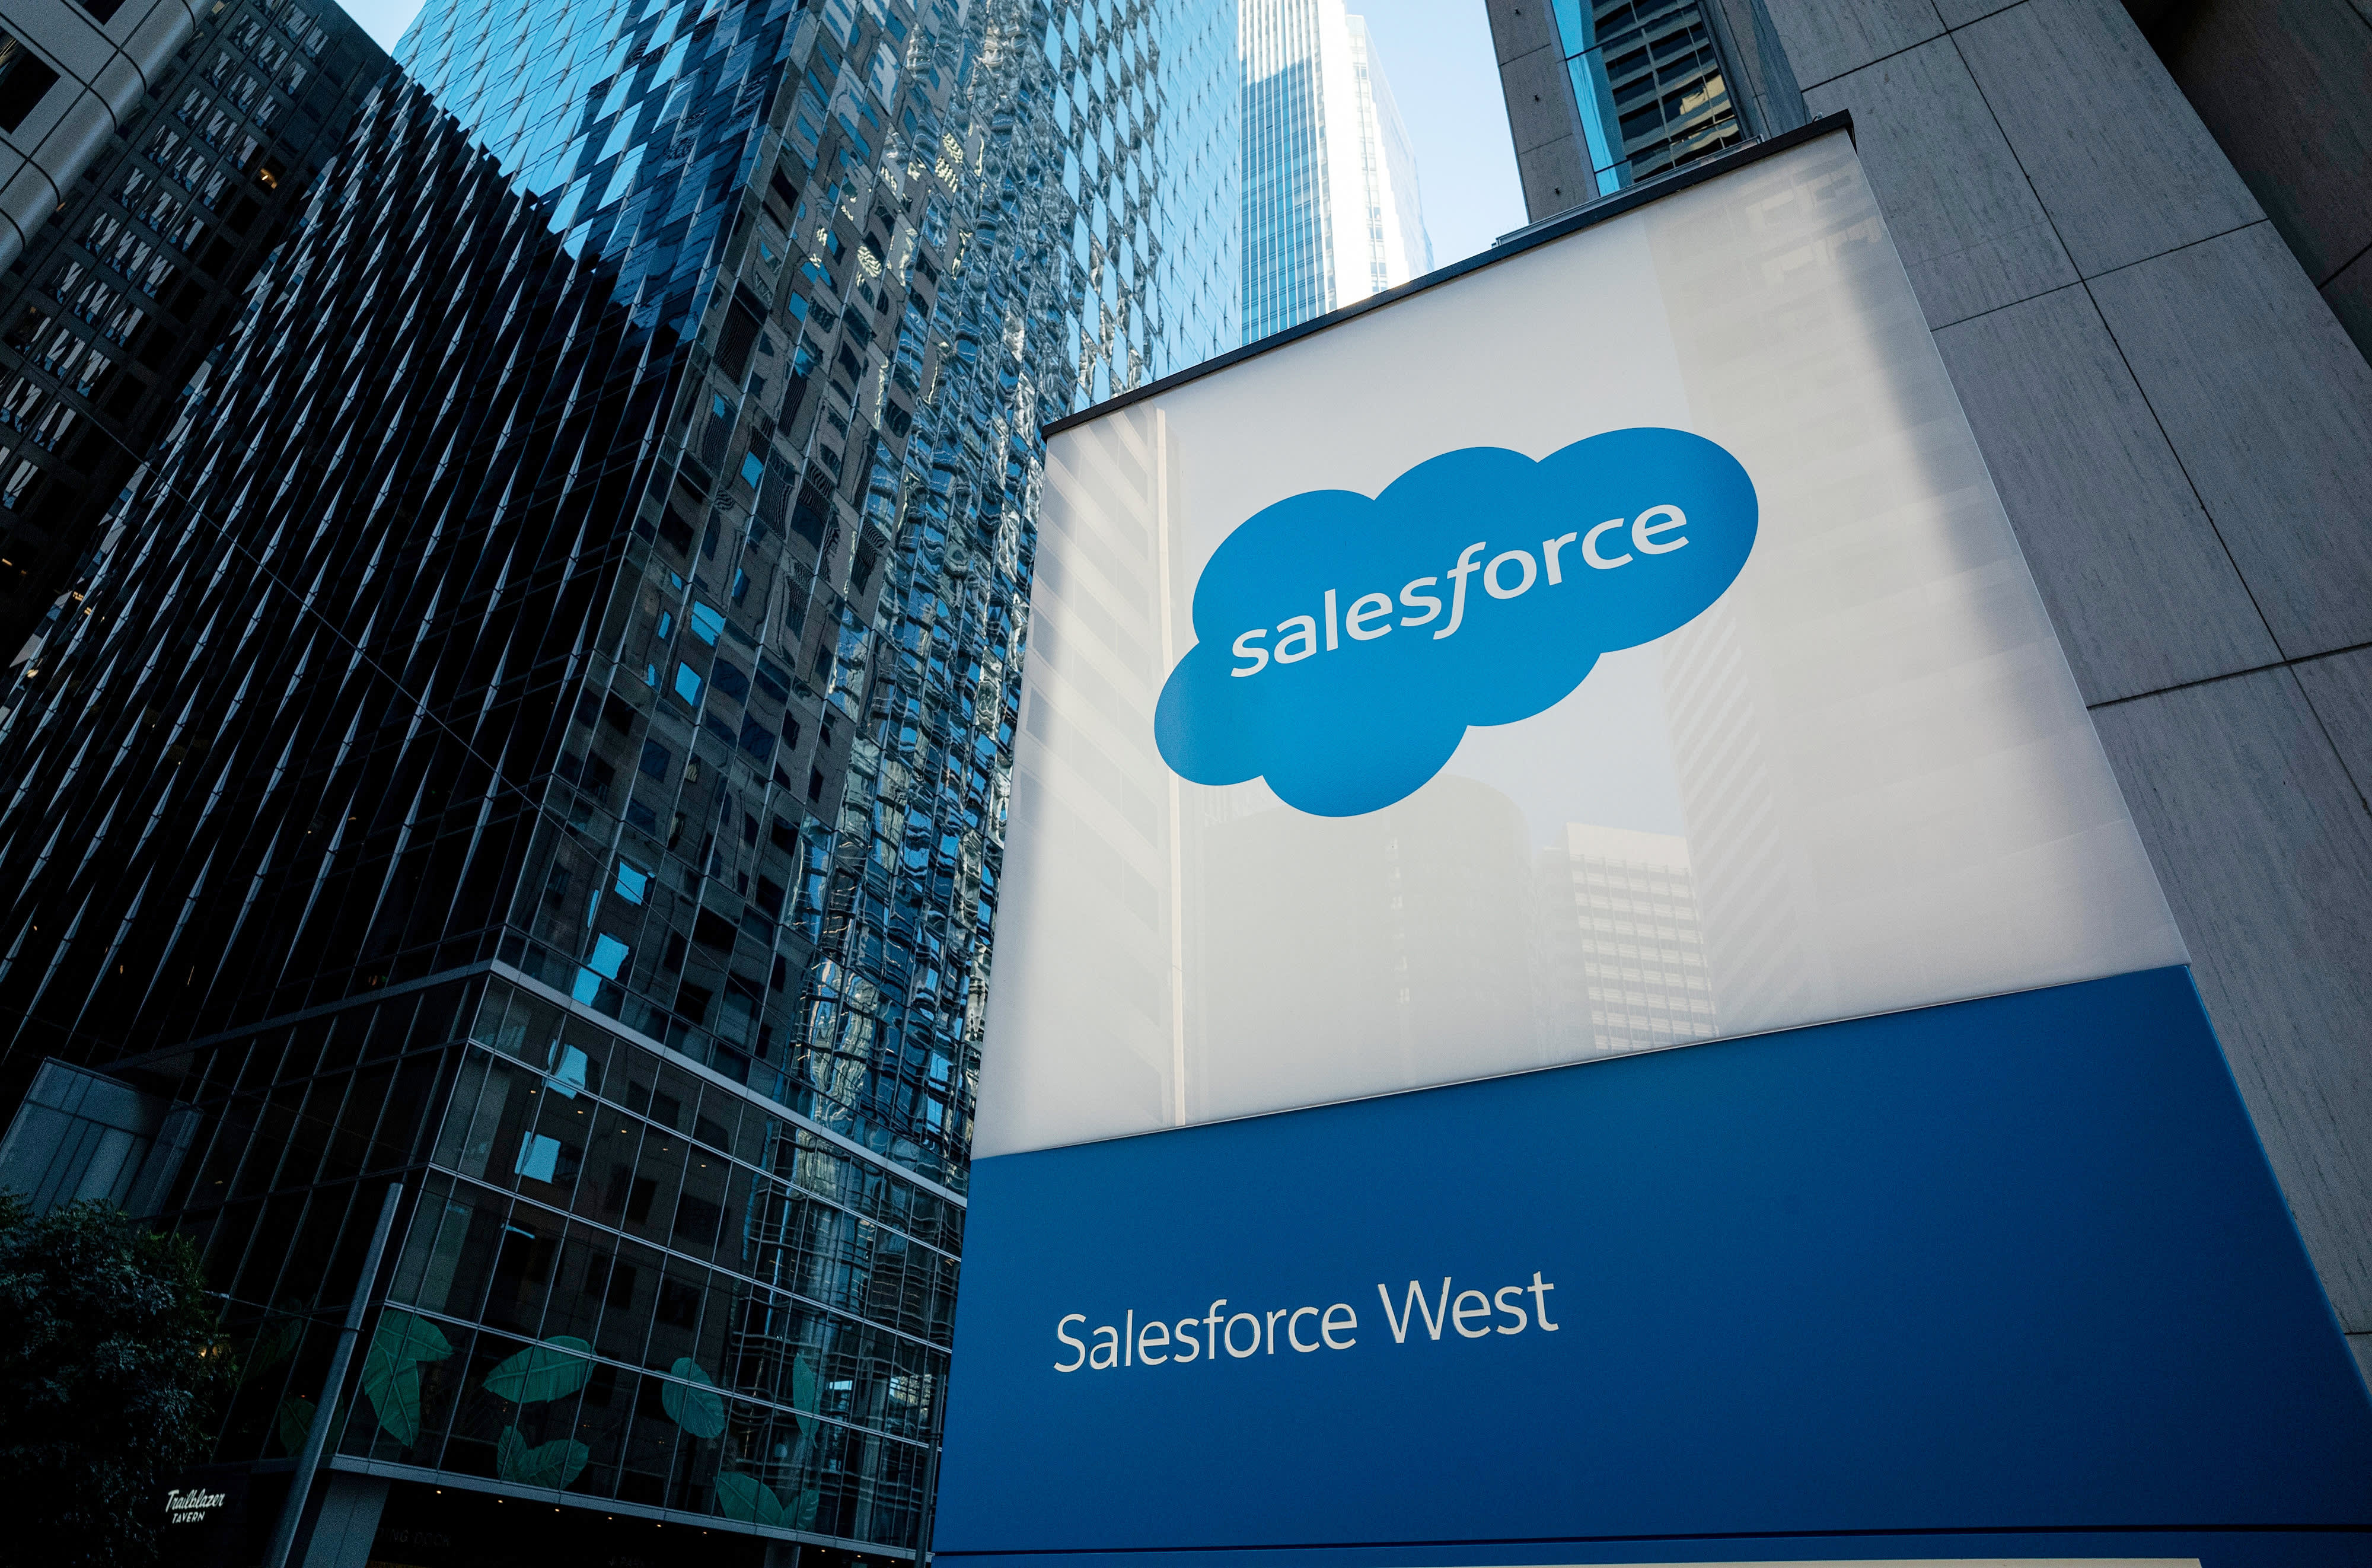 Quinn rebaja Salesforce a medida que la empresa se adapta a una era de crecimiento más lento